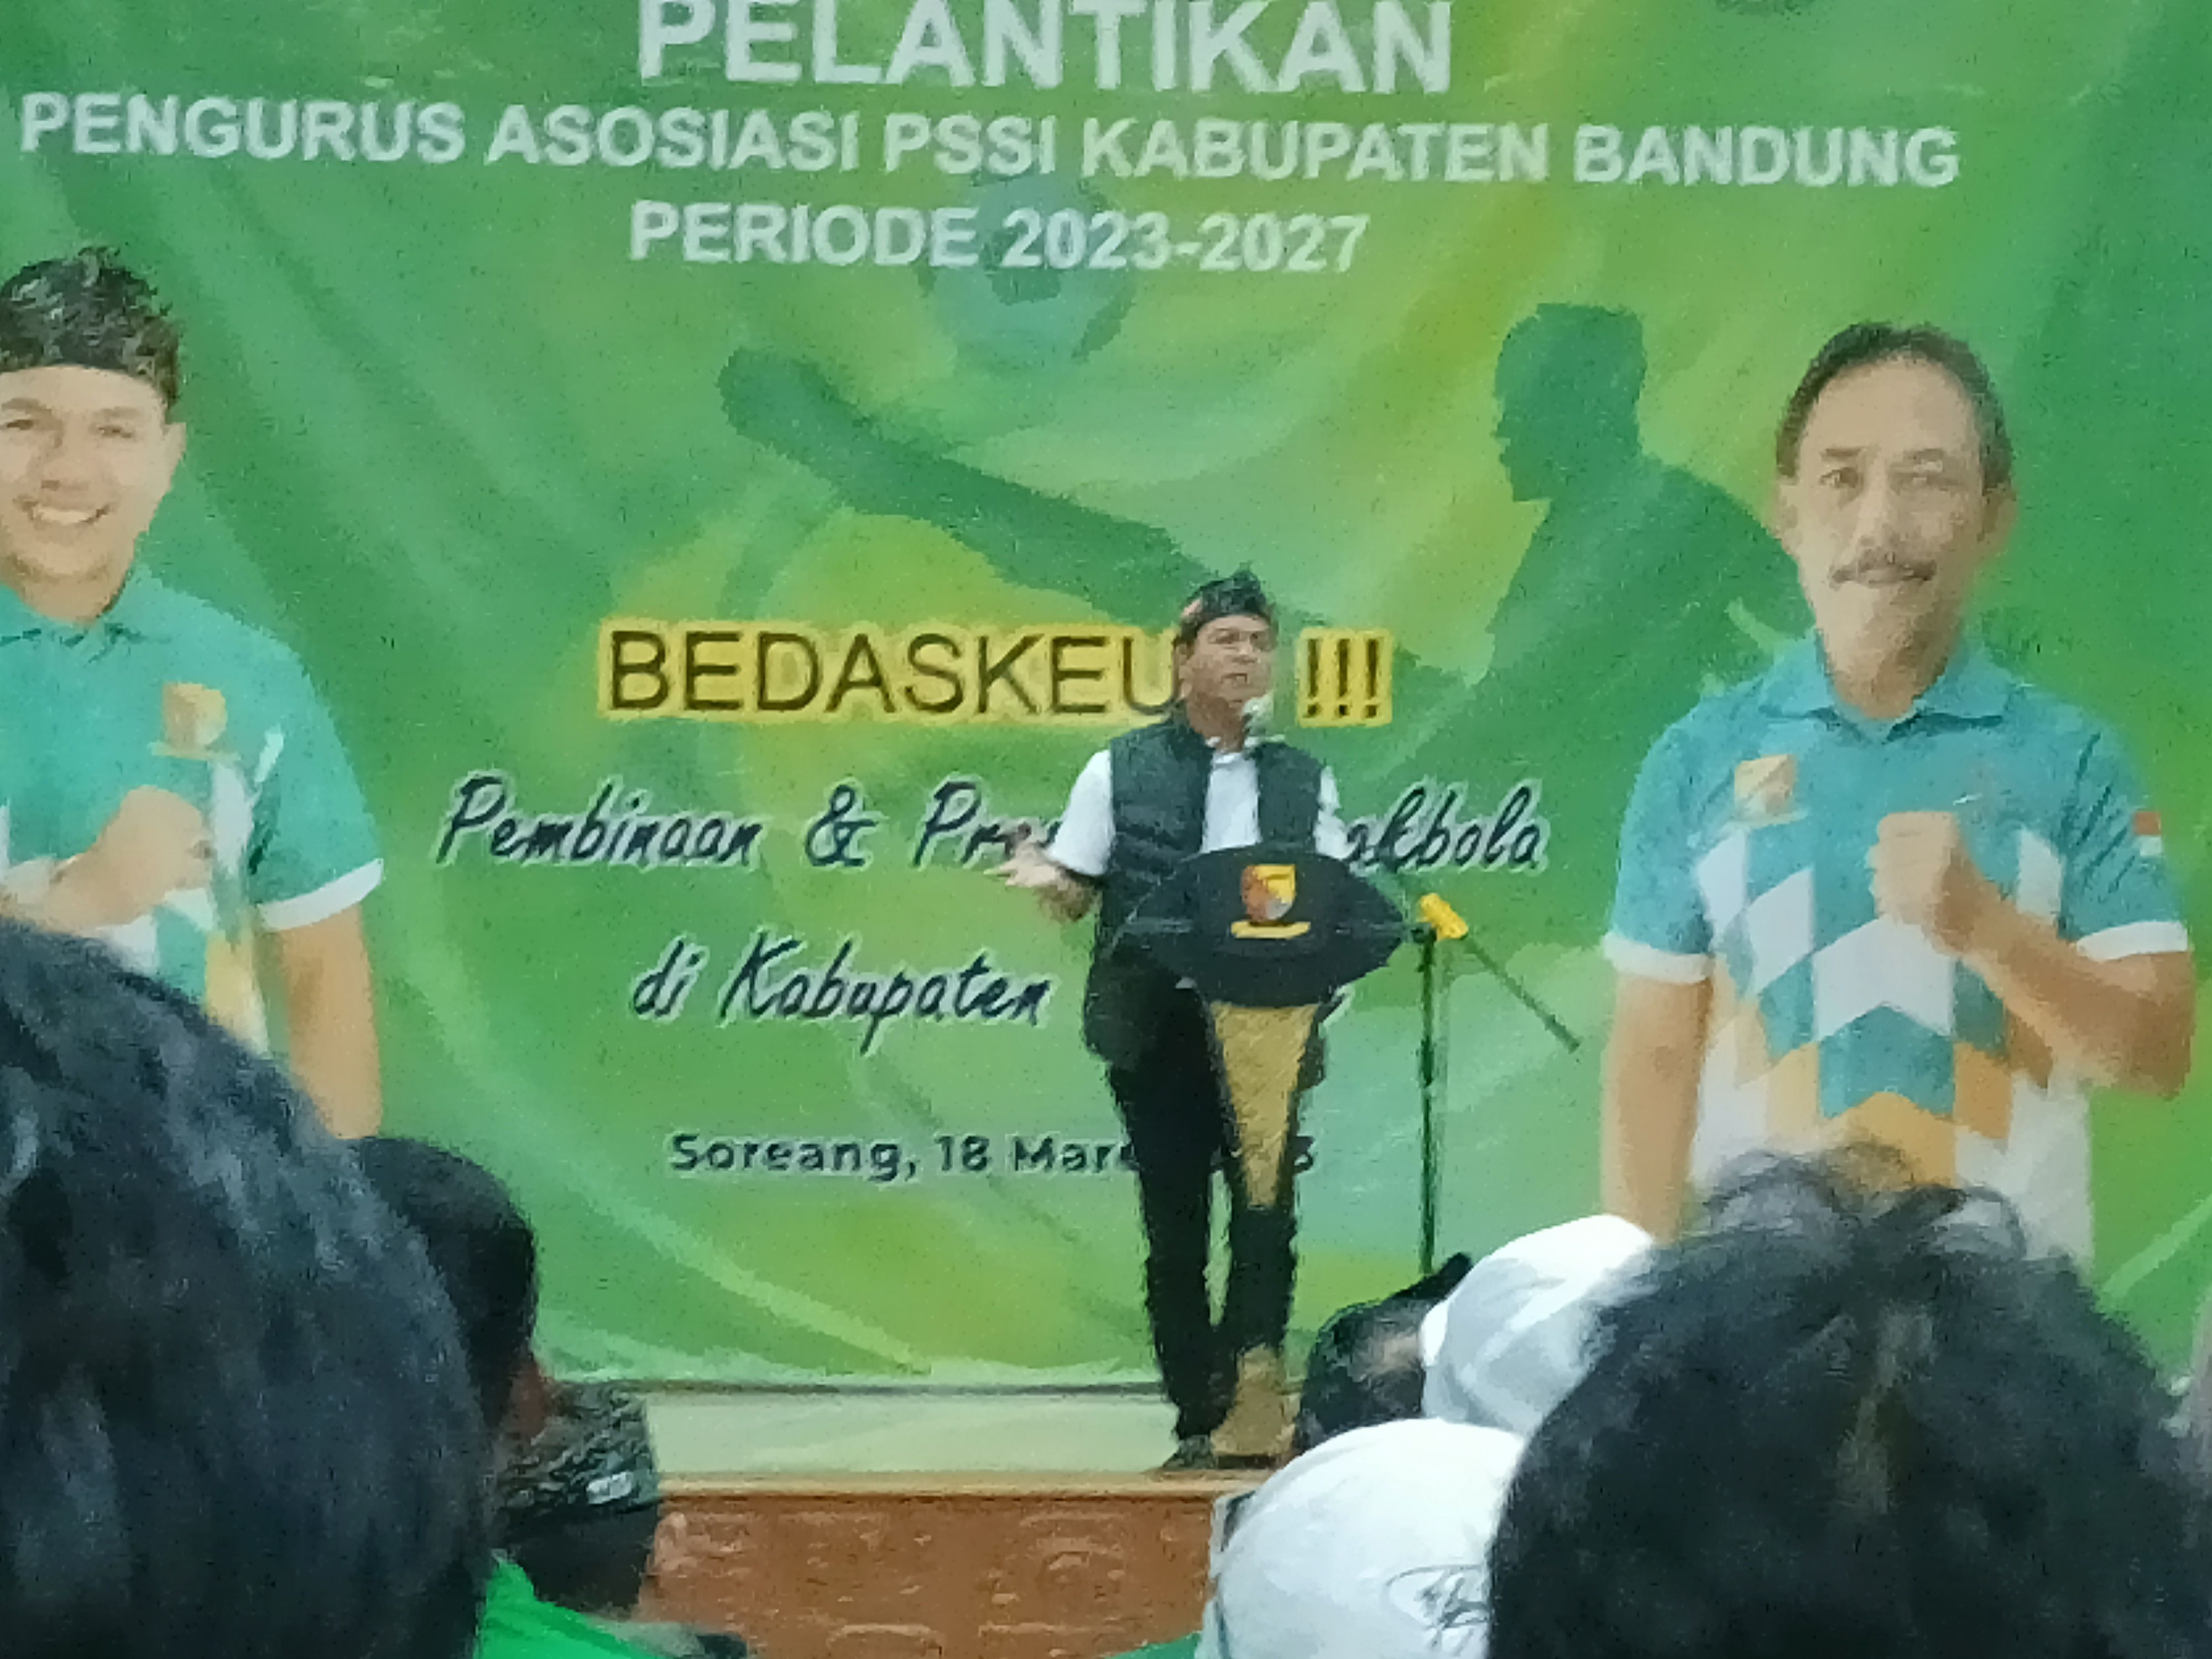 Kang DS sapaan akrab Bupati Bandung saat memberikan sambutan disela pelantikan pengurus Askab PSSI Kabupaten Bandung periode 2023-2027 di Gedung Moch Toha, Komplek Pemkab Bandung, Sabtu 18 Maret 2023.